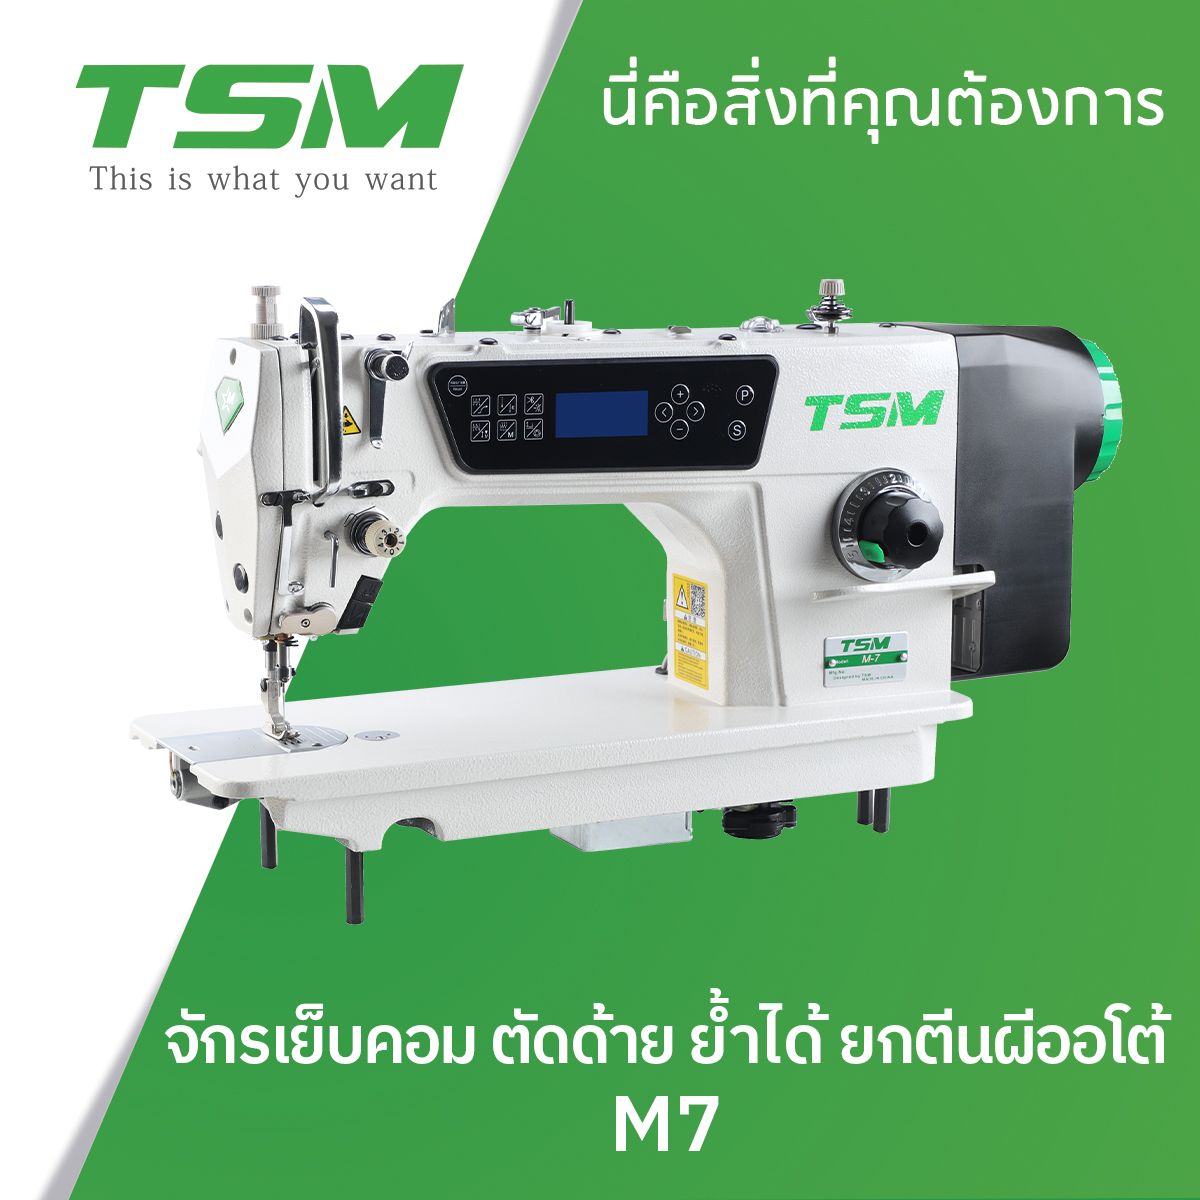 จักรเย็บคอม ตัดด้าย ย้ำได้ ยกตีนผีออโด้ (จอปุ่มกด) TSM รุ่น M7